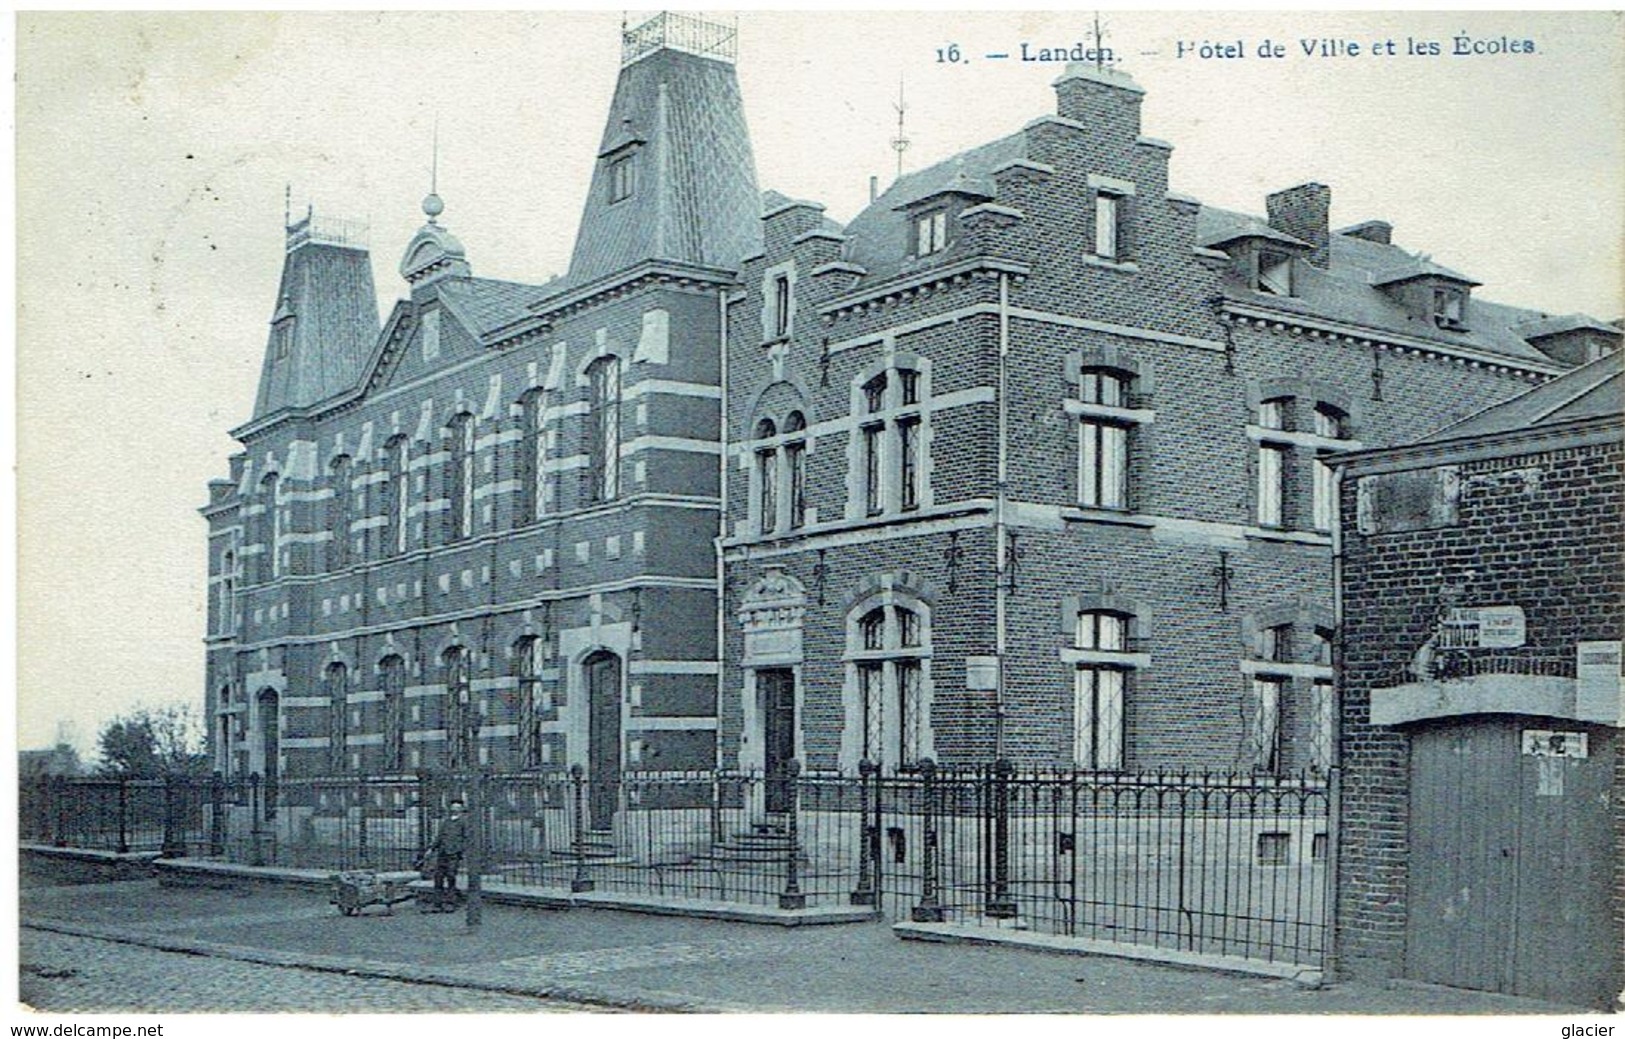 LANDEN - Hôtel De Ville Et Les Ecoles - N° 16  Phot. Bertels - Landen